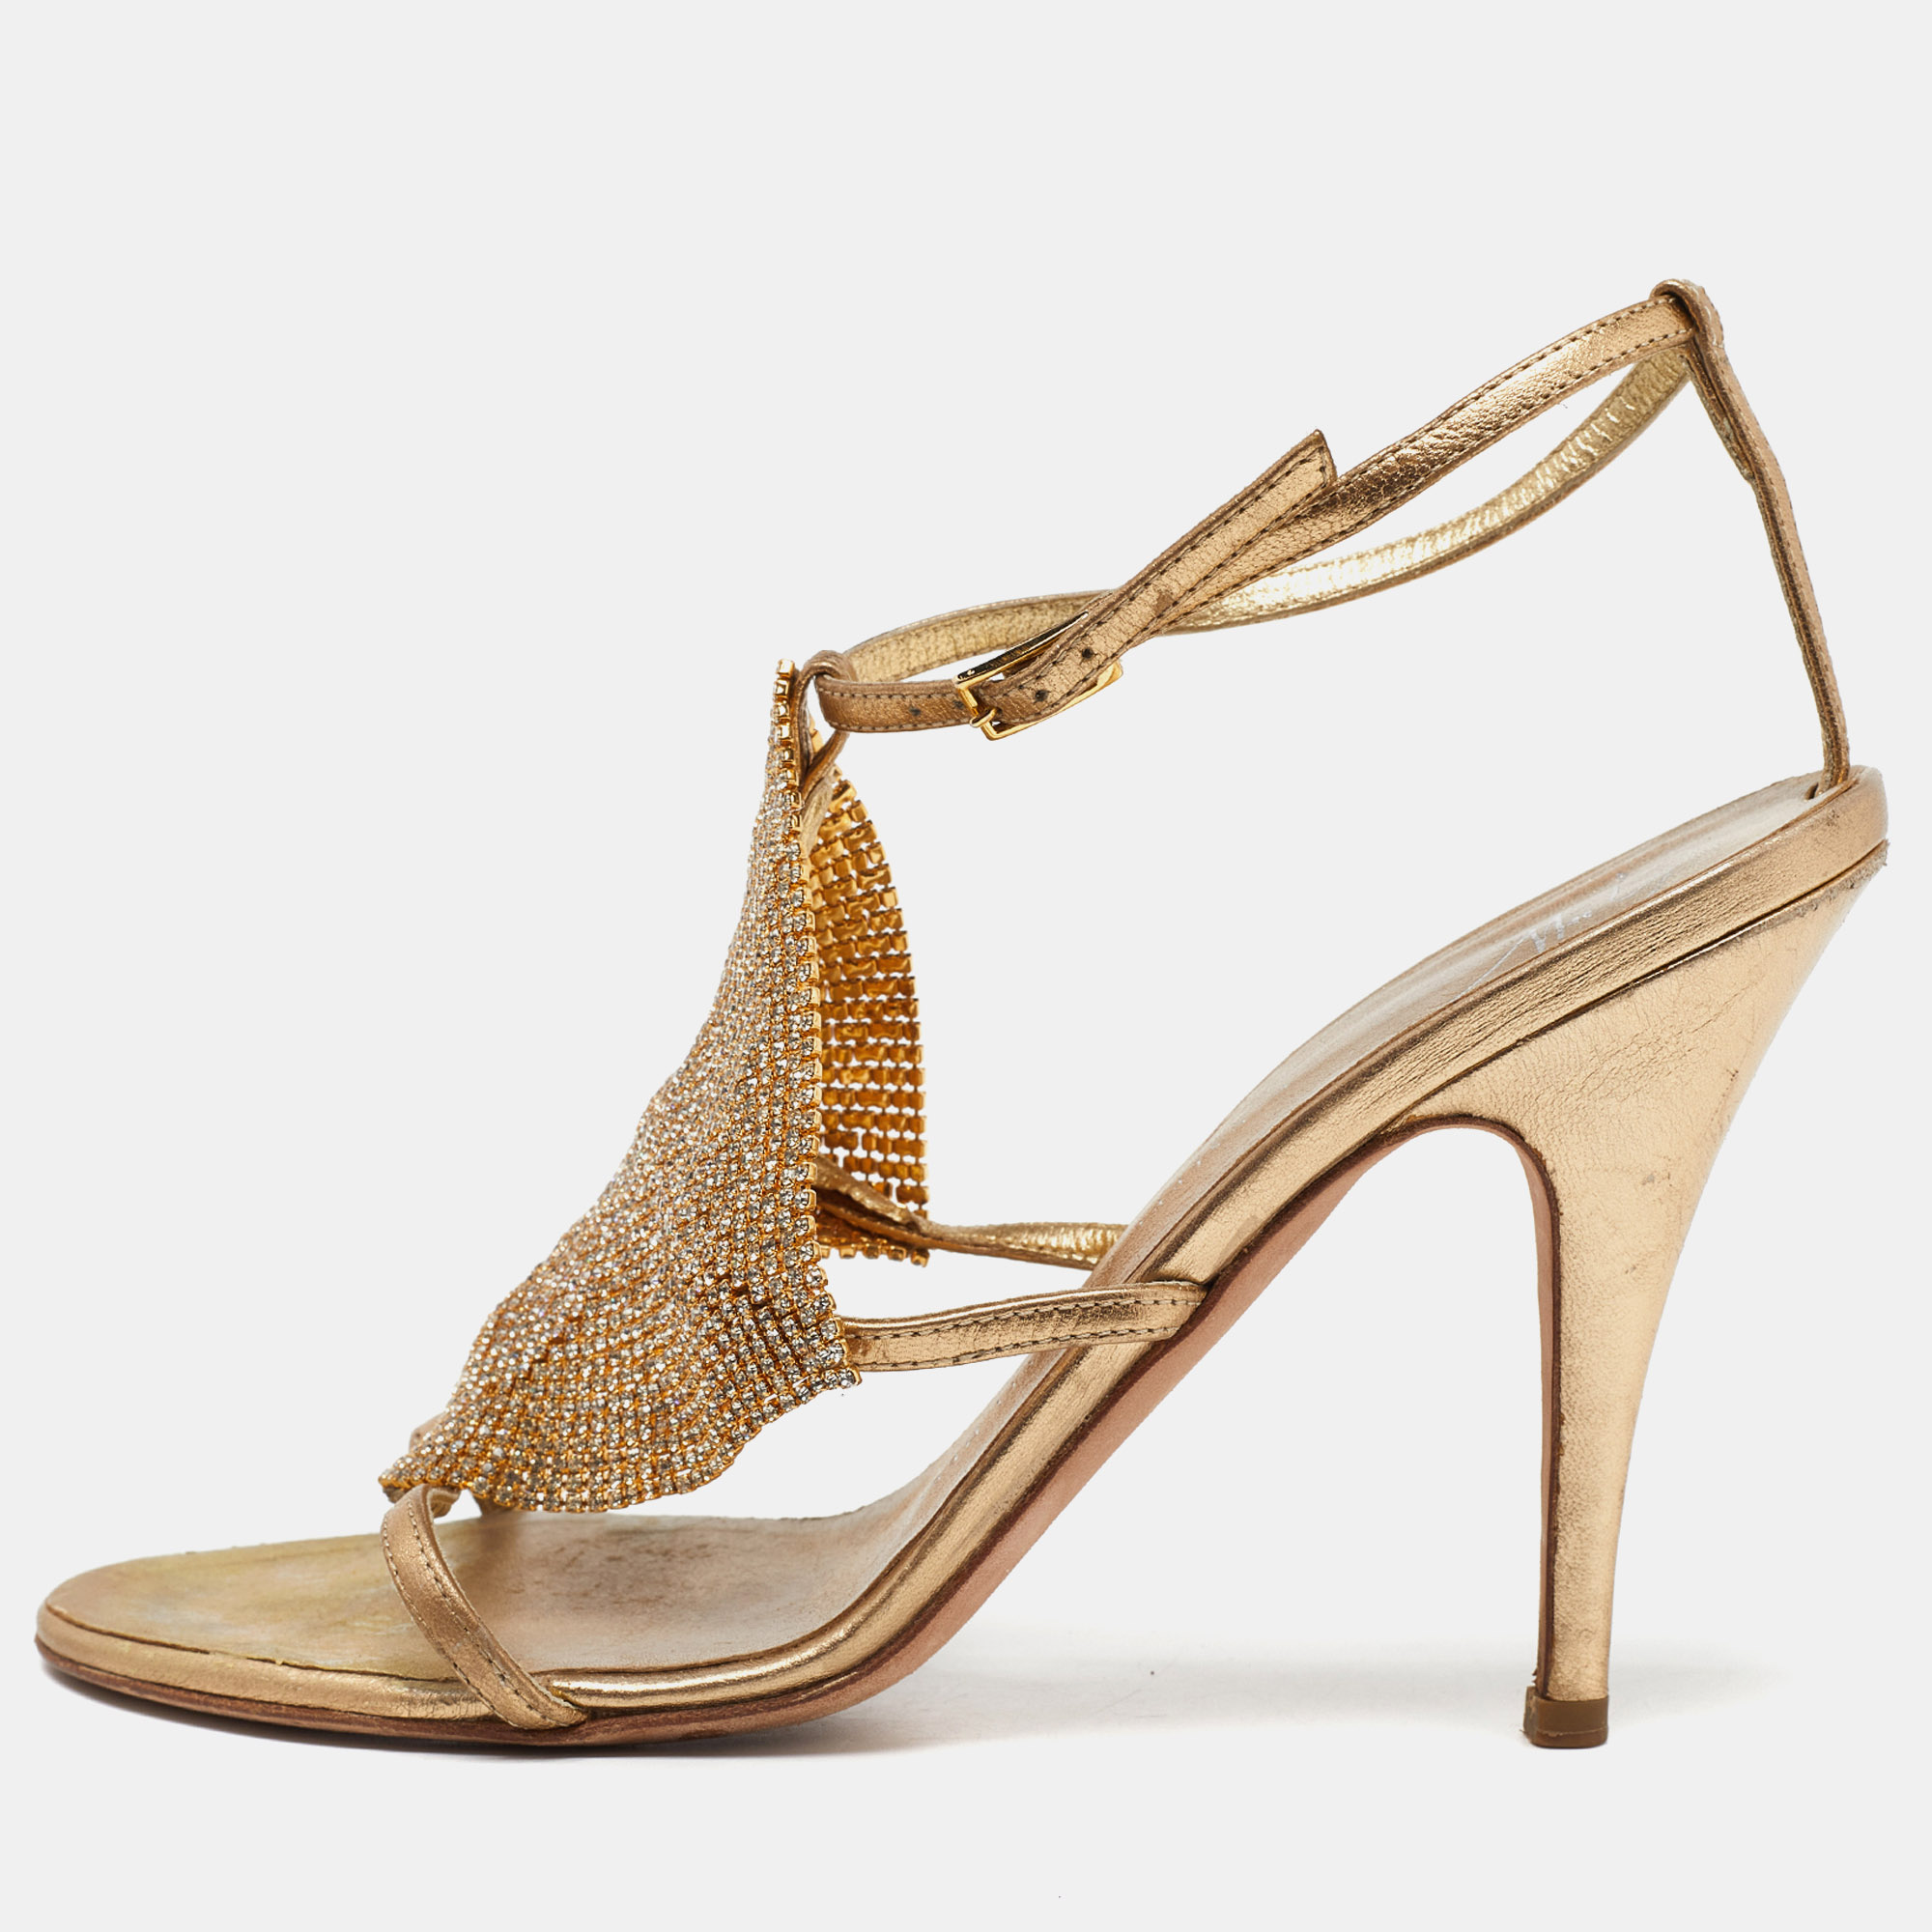 Giuseppe zanotti gold leather crystal embellished sandals size 38.5